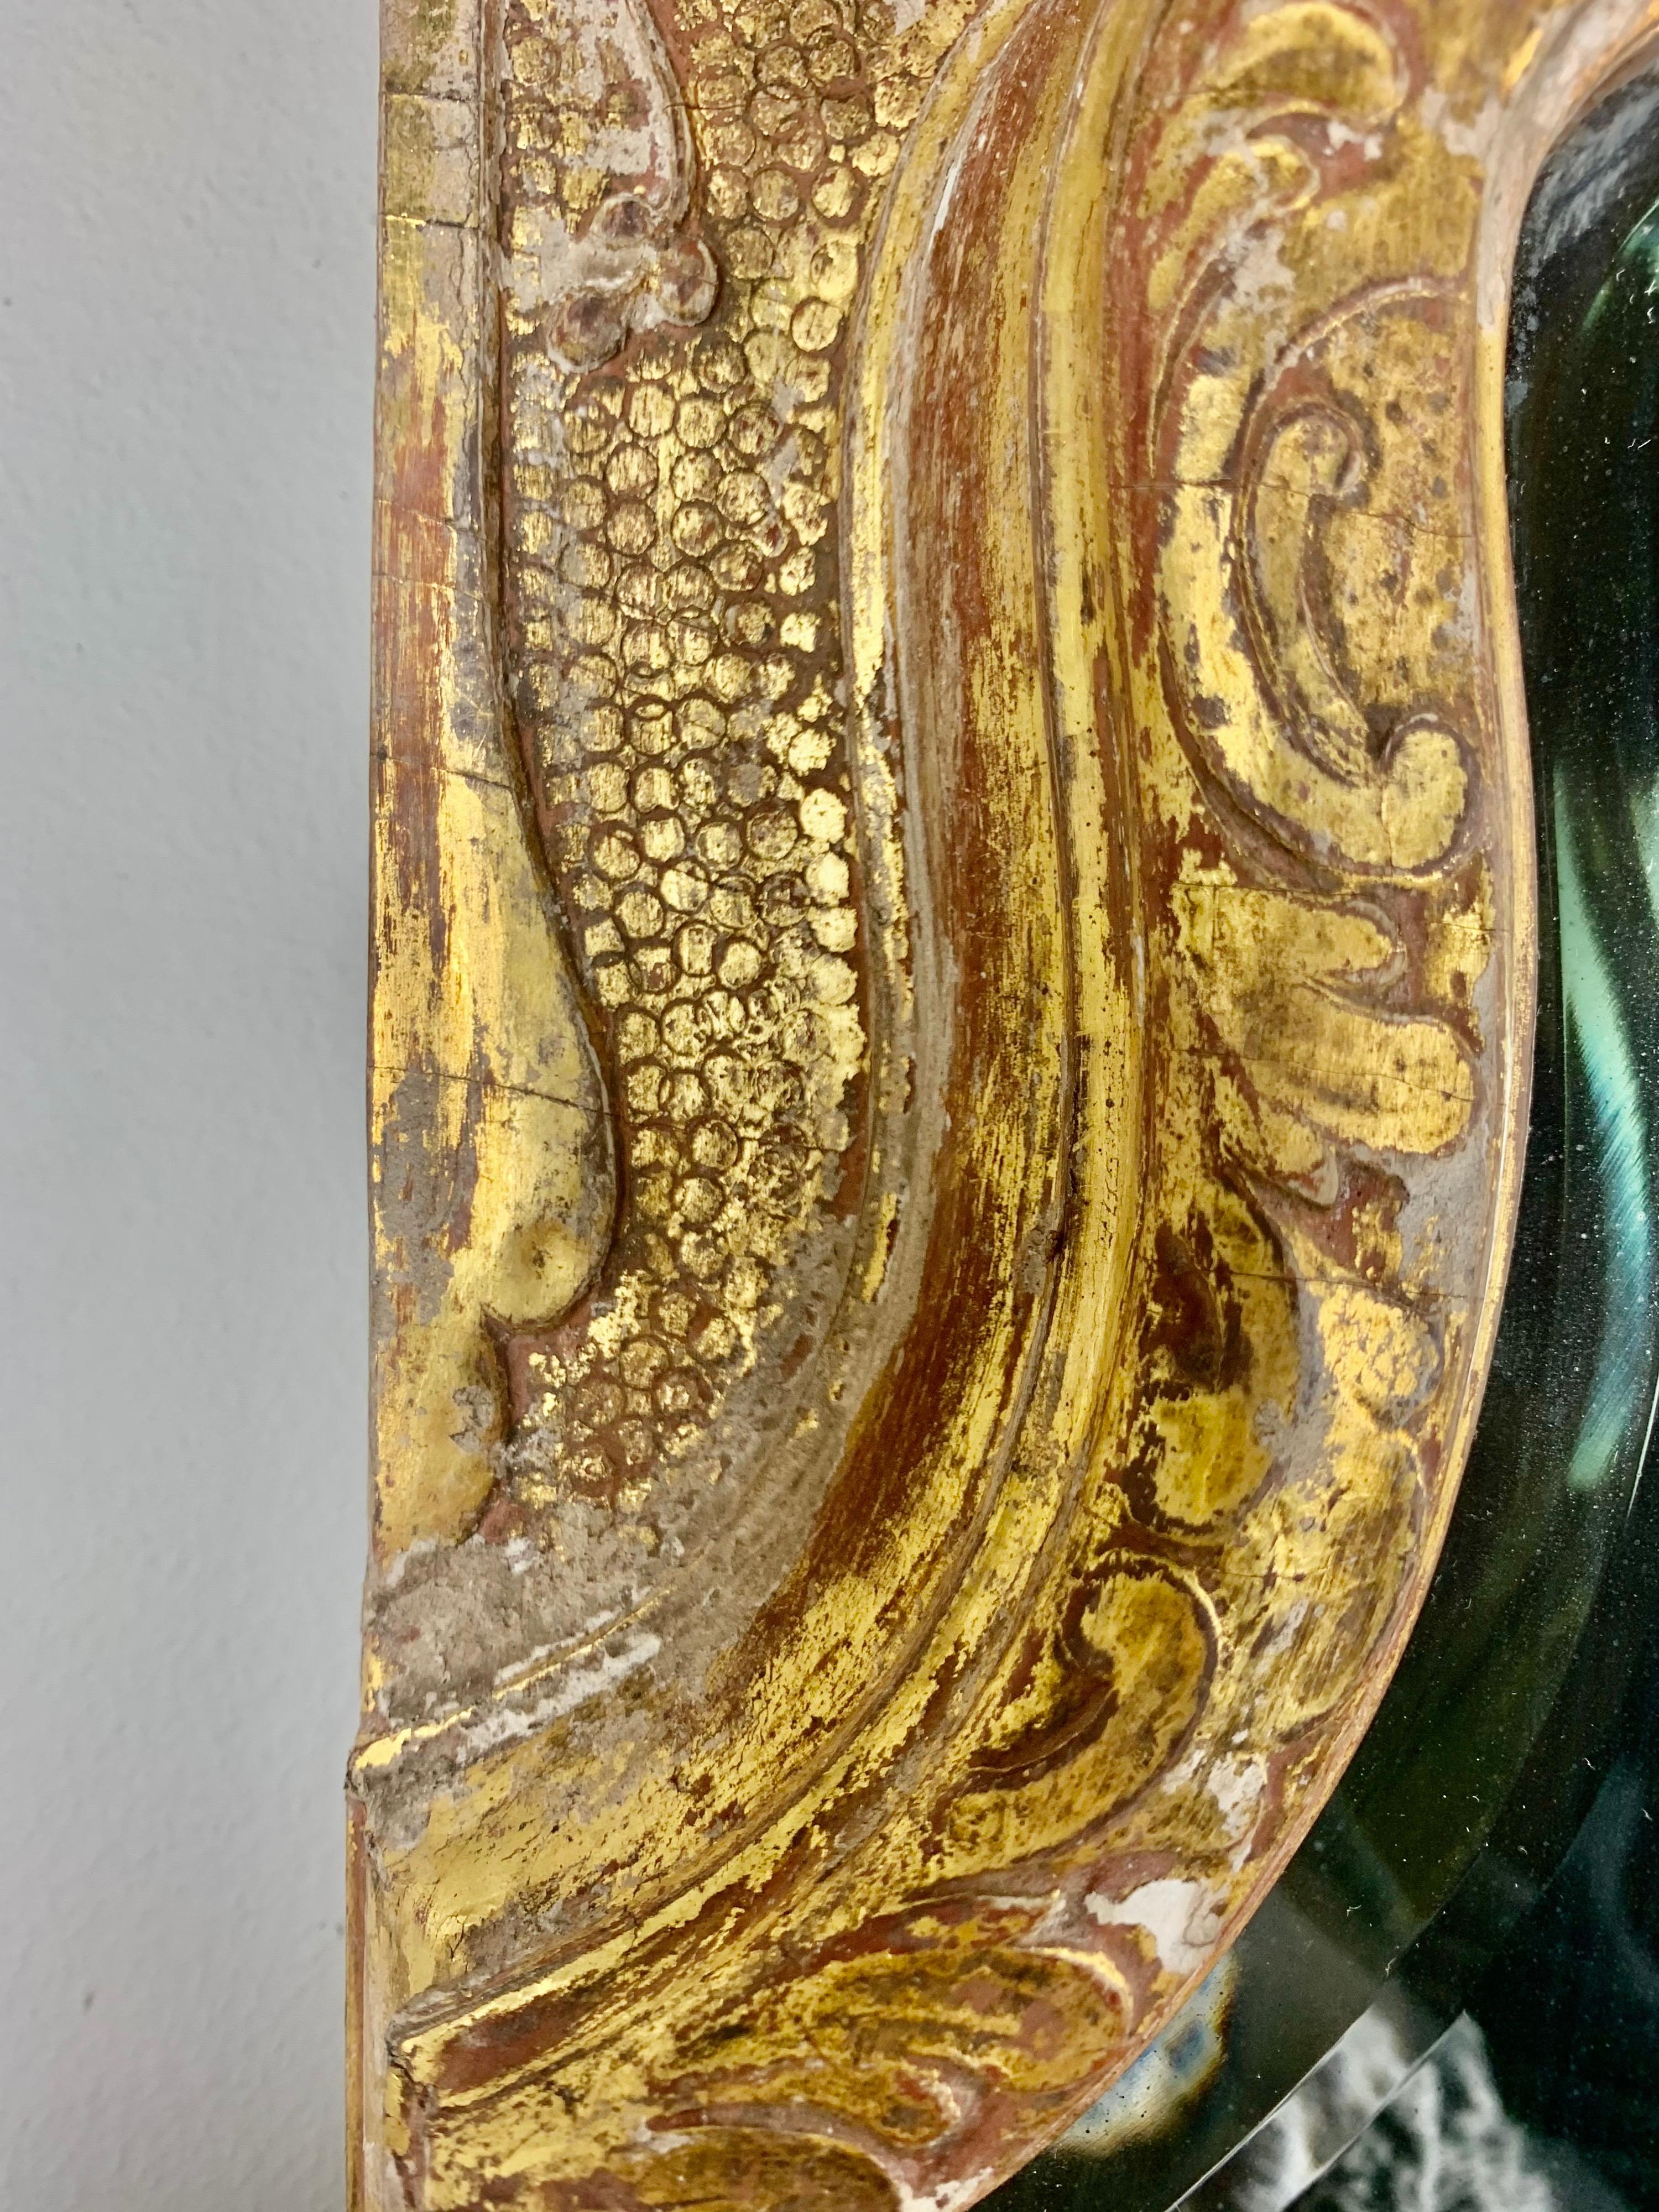 Französisch Louis XVI-Stil vergoldet Spiegel mit geschnitzten Details im gesamten. Es zeigt einen geflügelten Cherub, flankiert von Schriftrollen und Akanthusblättern. Ein Großteil des Blattgoldes ist abgenutzt, so dass das Holz darunter zum